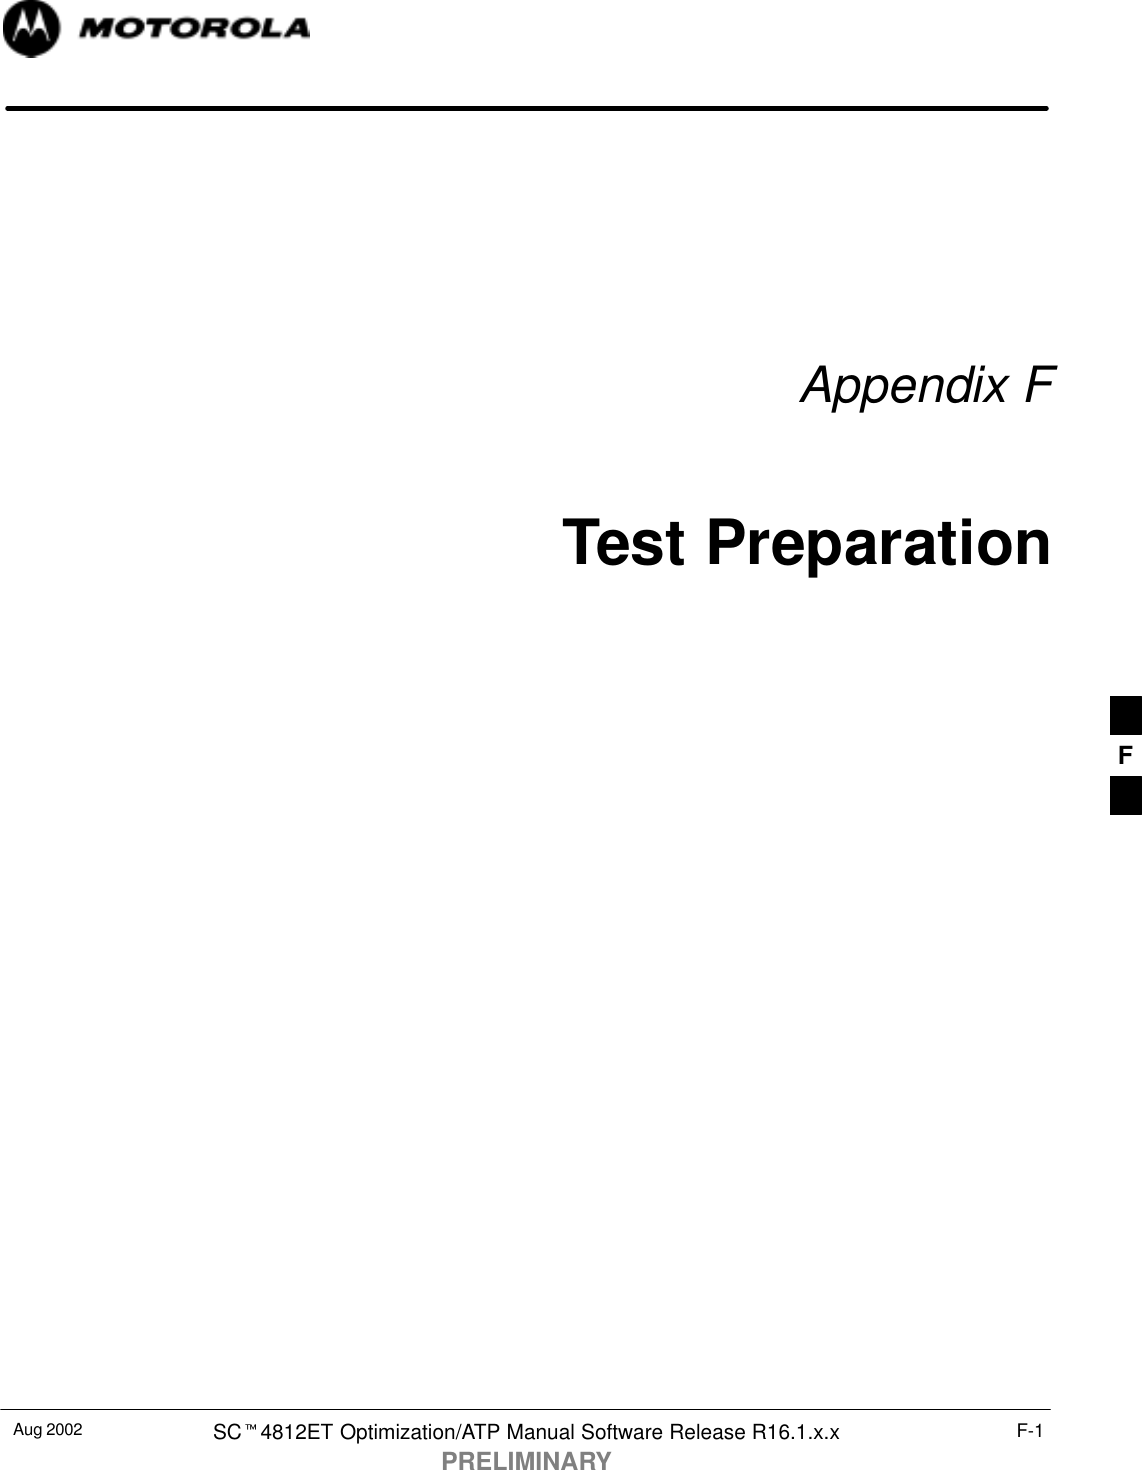 Aug 2002 SCt4812ET Optimization/ATP Manual Software Release R16.1.x.xPRELIMINARYF-1Appendix FTest PreparationF